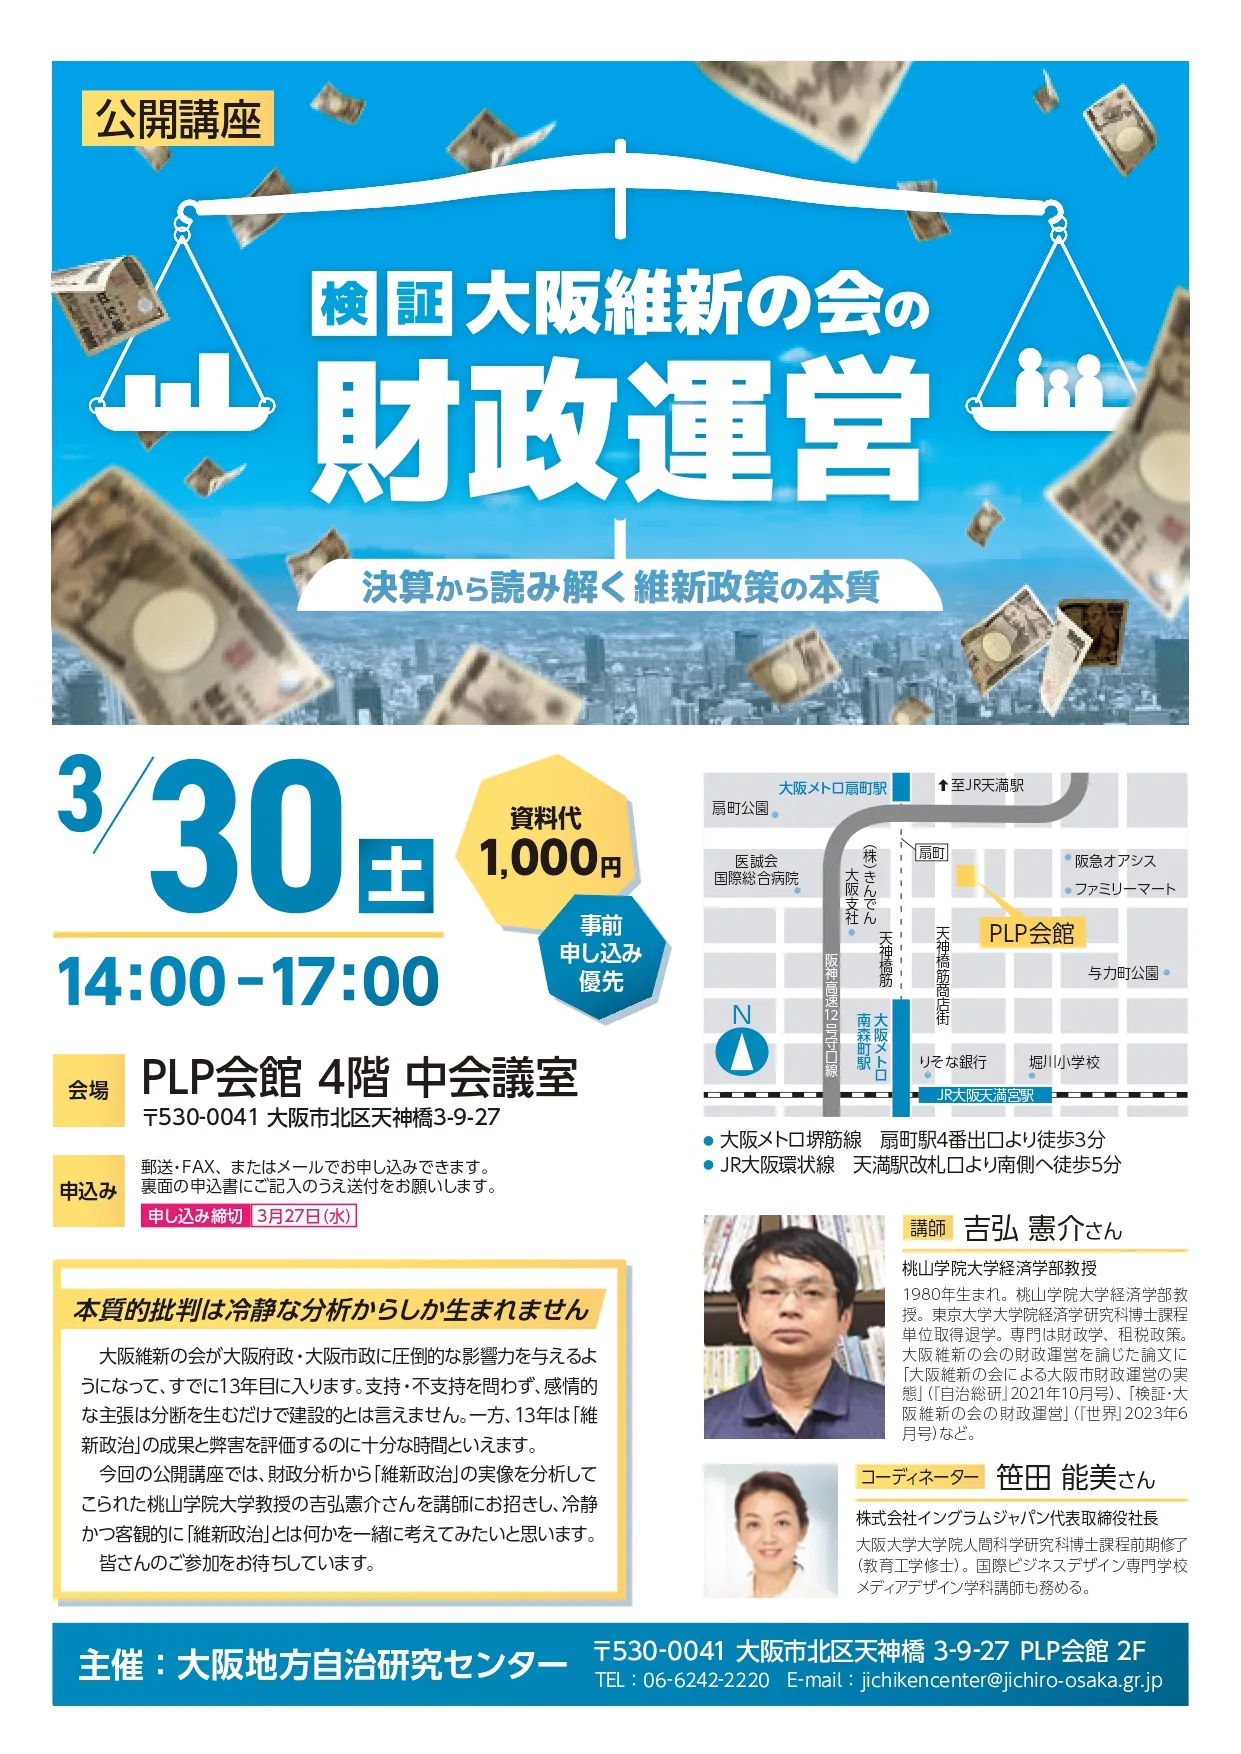 公開講座「大阪維新の会の財政運営」ビラ1ページ目